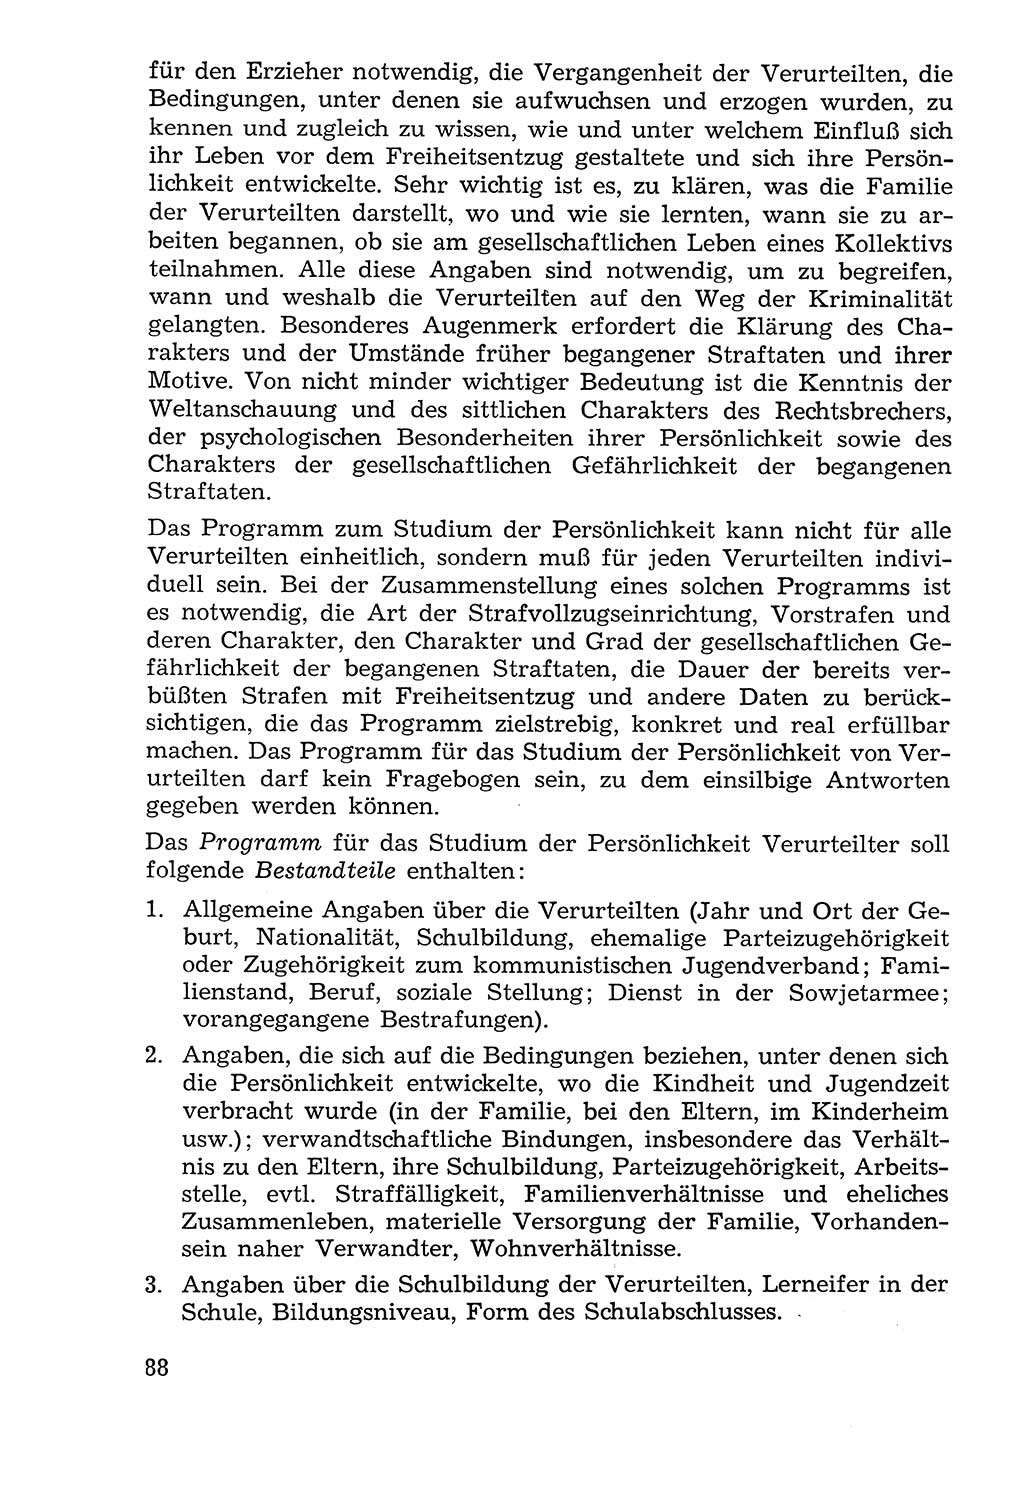 Lehrbuch der Strafvollzugspädagogik [Deutsche Demokratische Republik (DDR)] 1969, Seite 88 (Lb. SV-Pd. DDR 1969, S. 88)